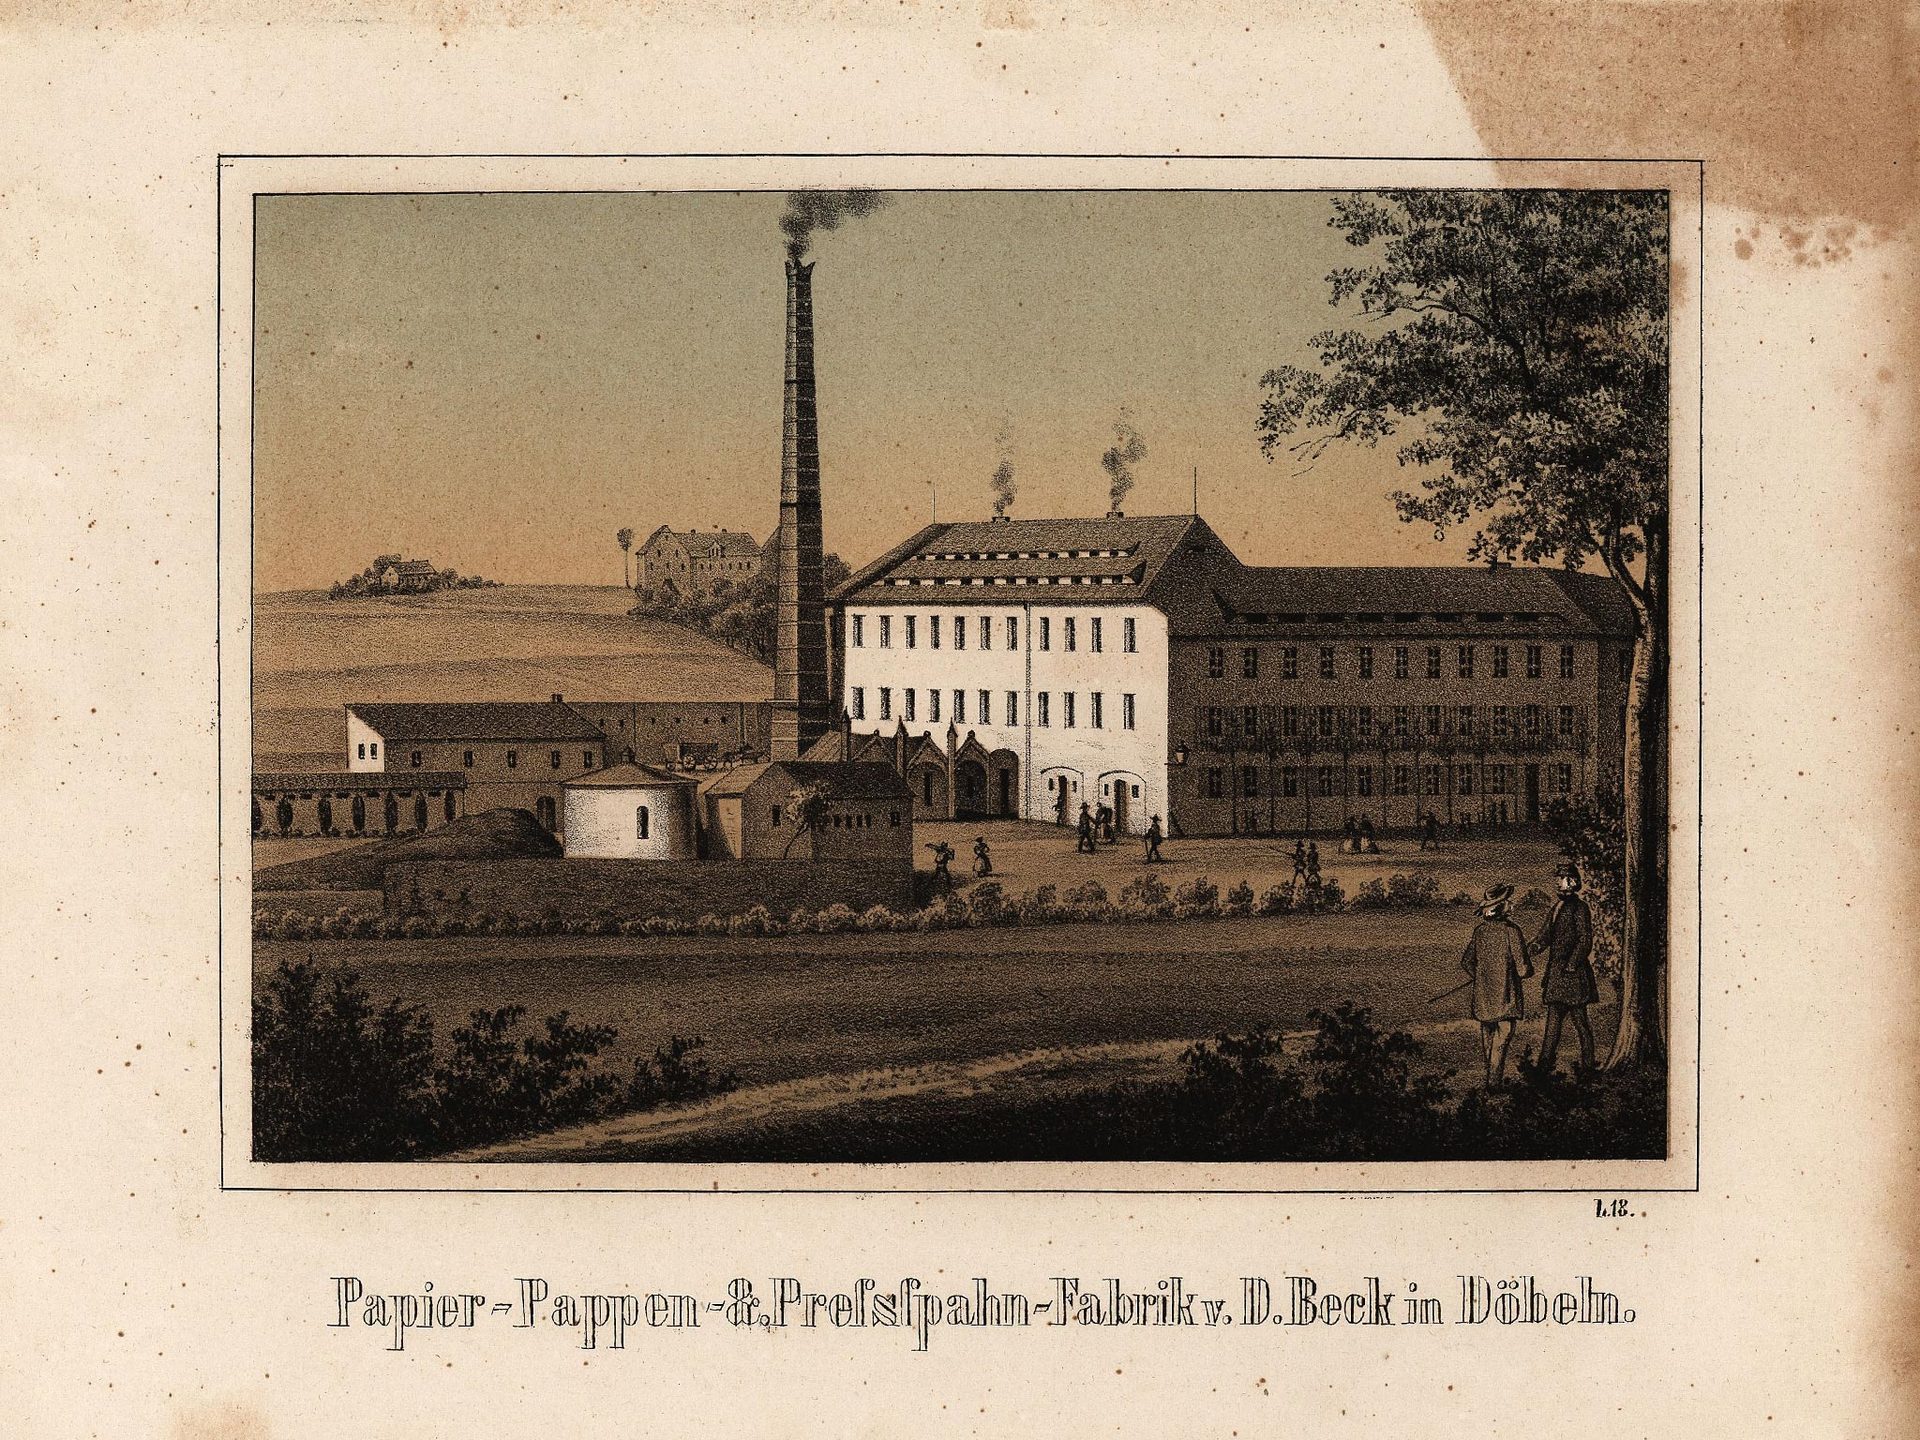 Papier-Pappen- &amp; Preßspahnfabrik v. D. Beck in Döbeln